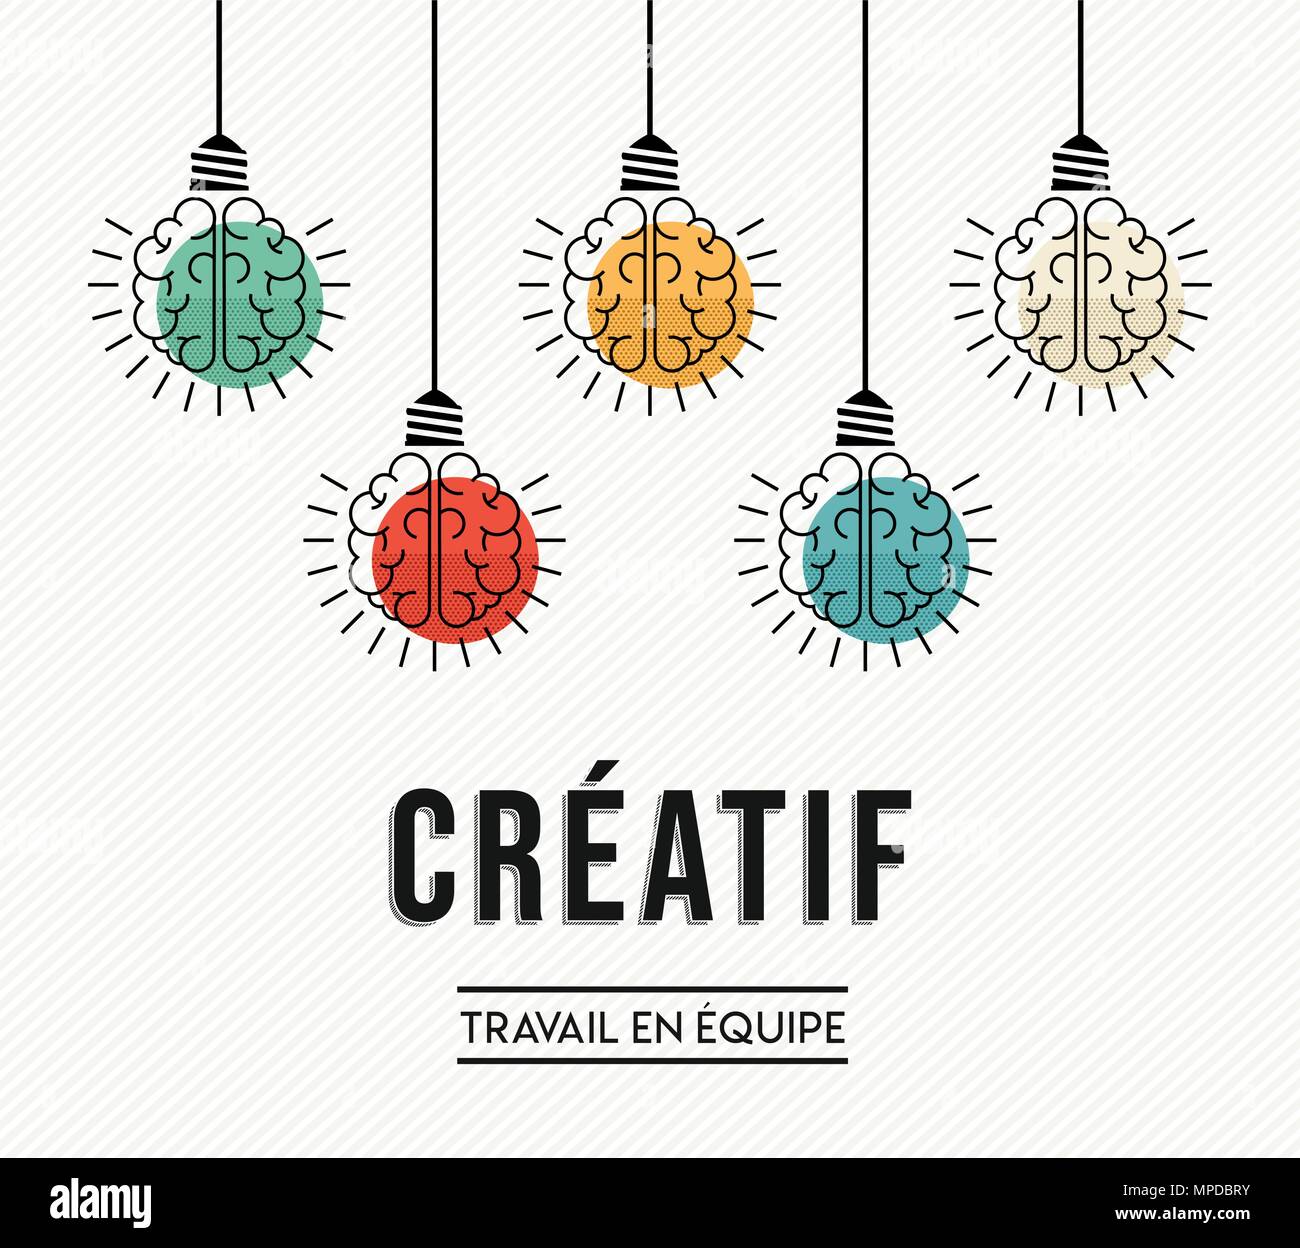 Kreative Teamarbeit modernes Design in französischer Sprache mit menschlichen Gehirnen als bunte Lampe Licht, business Kreativität Konzept. EPS 10 Vektor. Stock Vektor